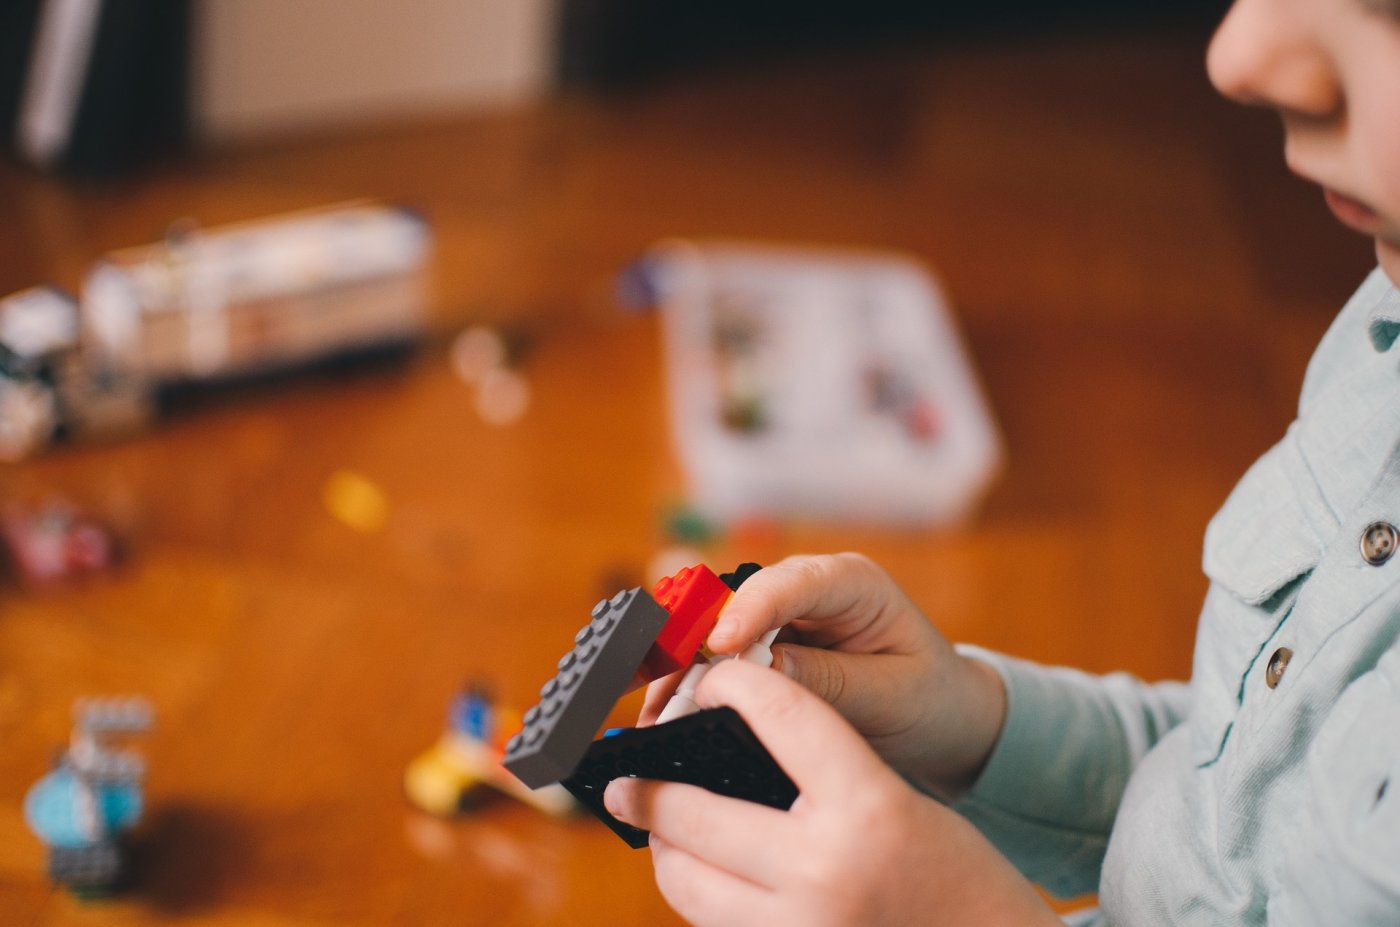 Na zdjęciu widać rozrzucone kolorowe klocki LEGO, z których ręka dziecka buduje robota na tle brązowej podłogi.